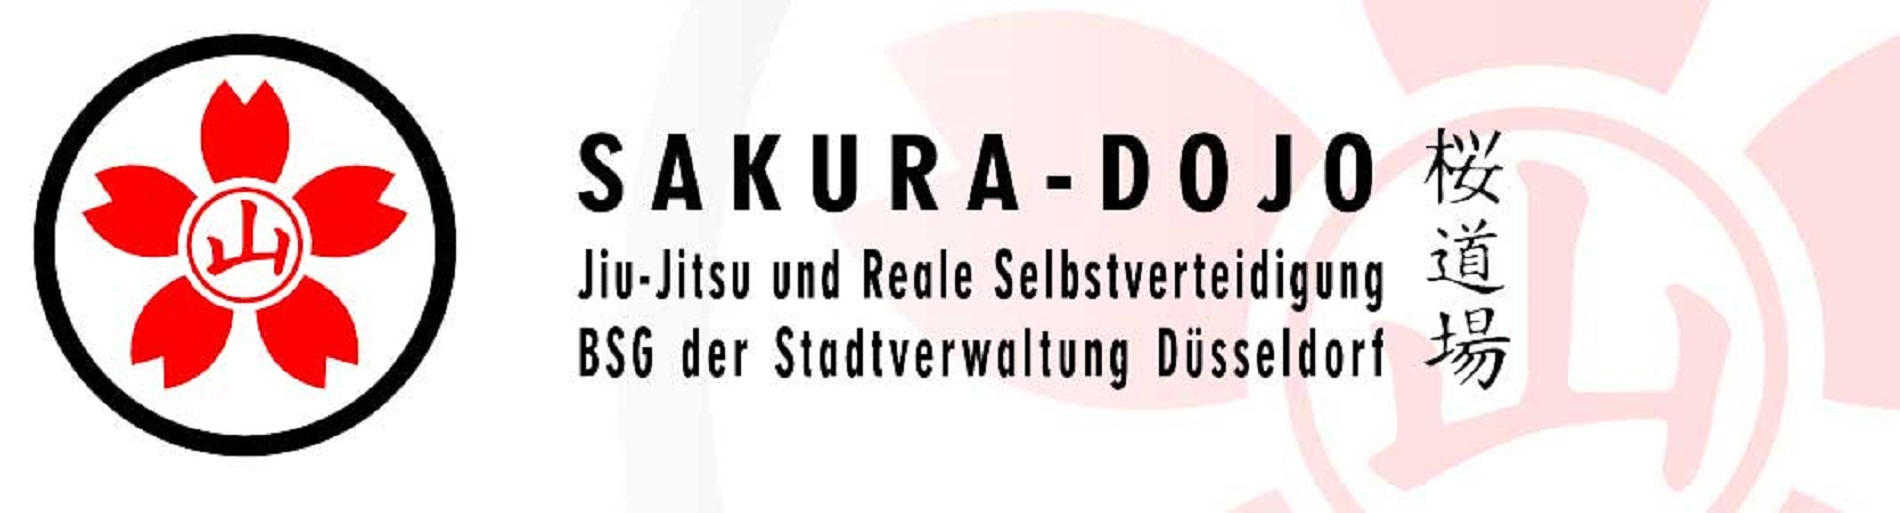 Sakura - Dojo Düsseldorf